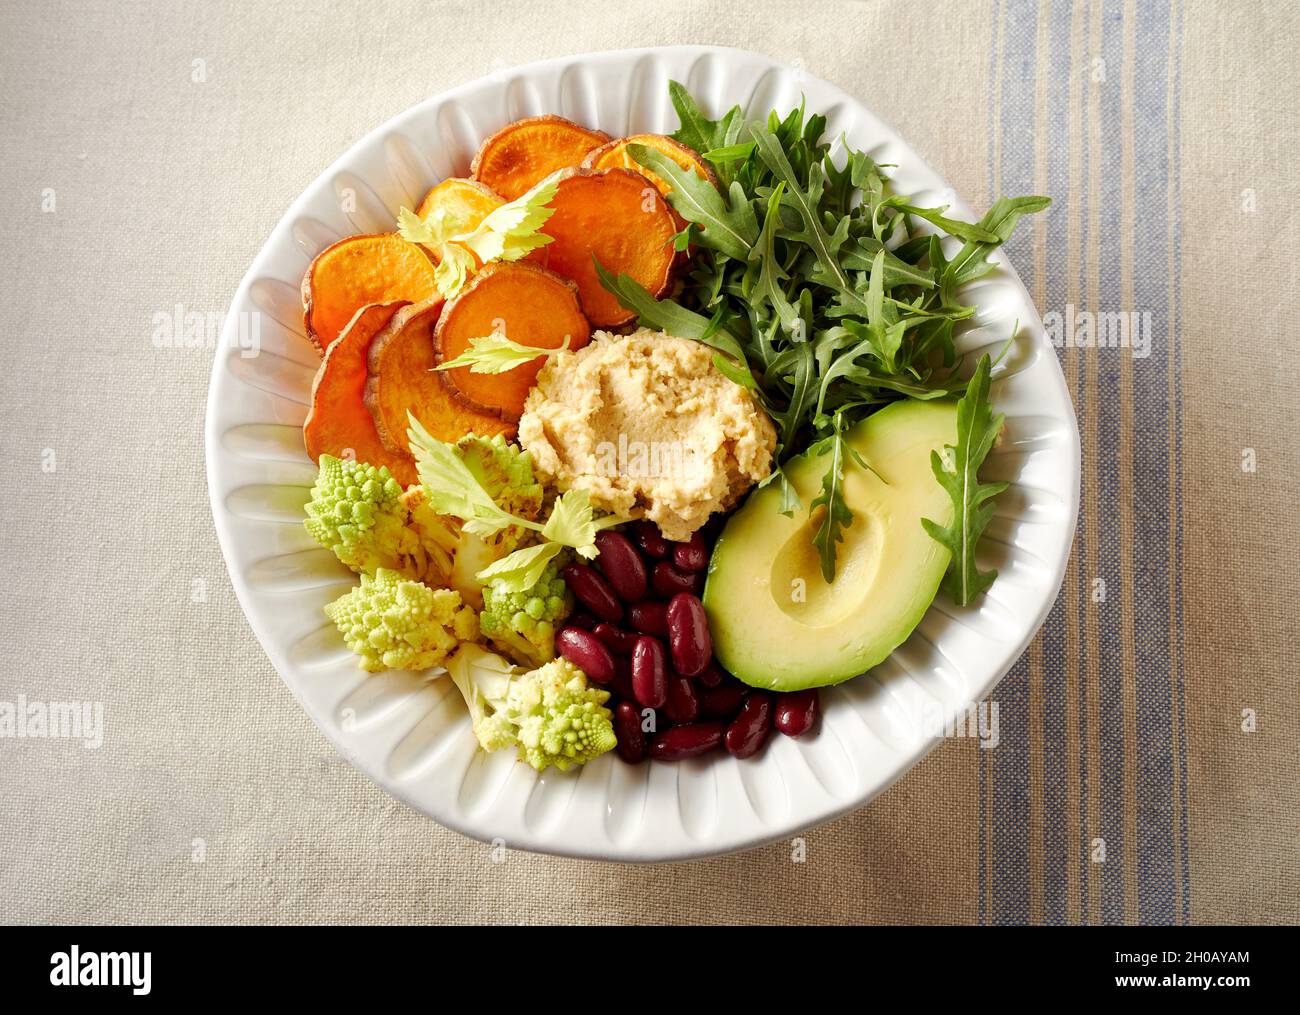 Draufsicht auf die Buddha-Schüssel mit appetitanregenden verschiedenen Gemüsesorten und Hummus, der für ein vegetarisches Mittagessen auf den Tisch gelegt wird Stockfoto